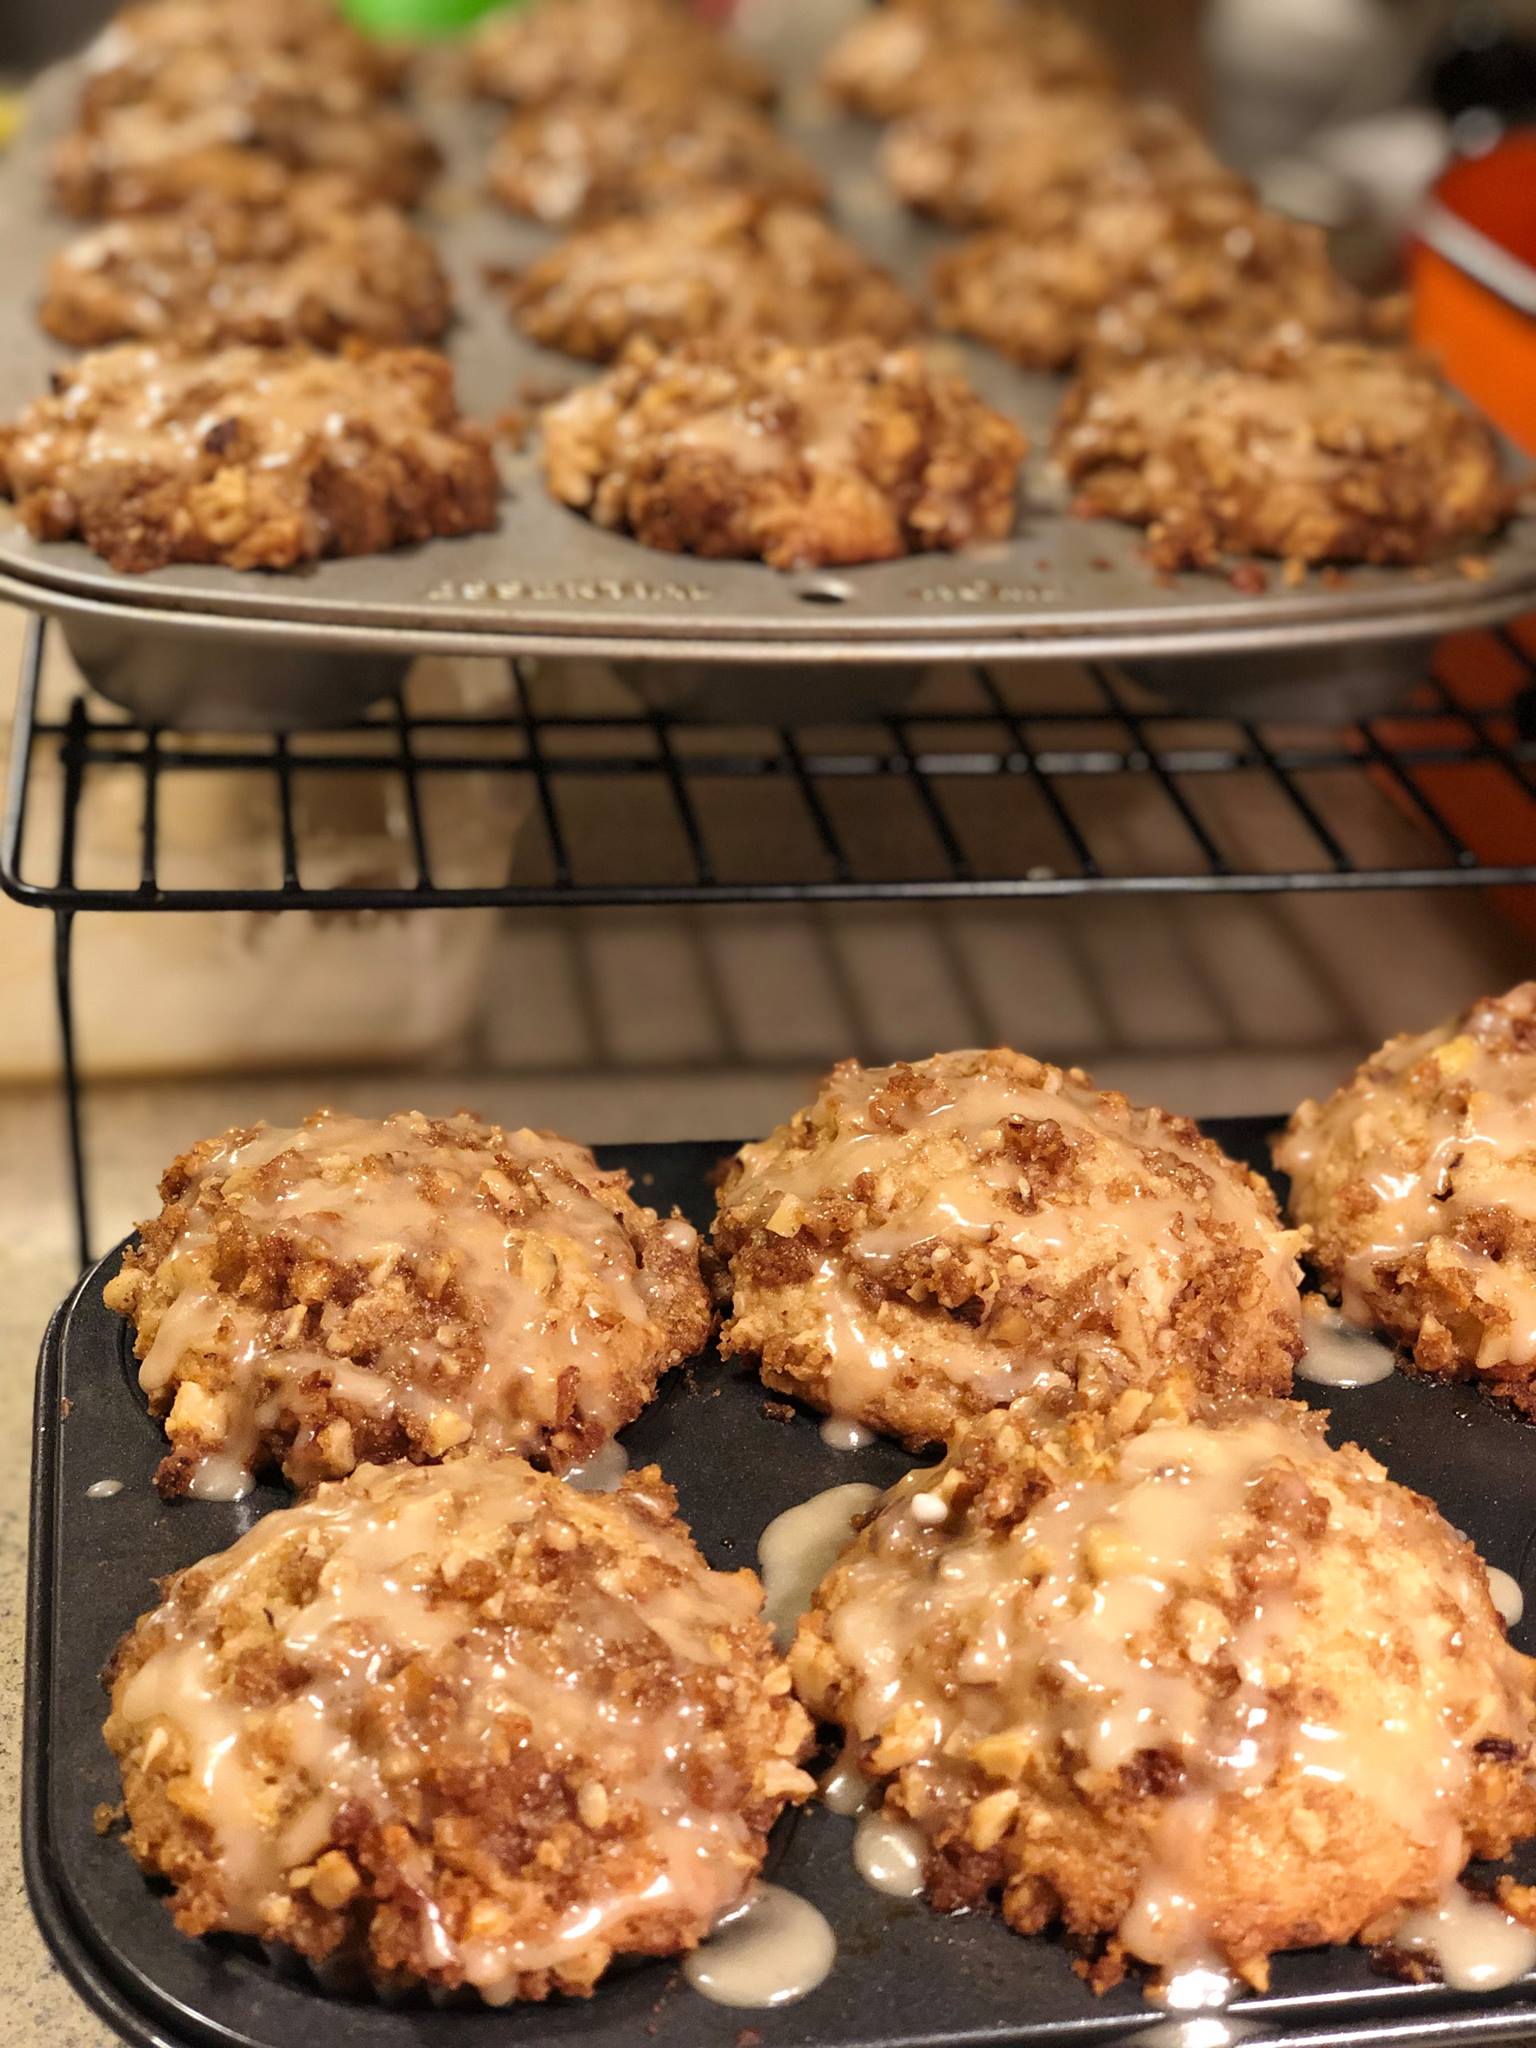 Caramel Apple Buttermilk Muffins